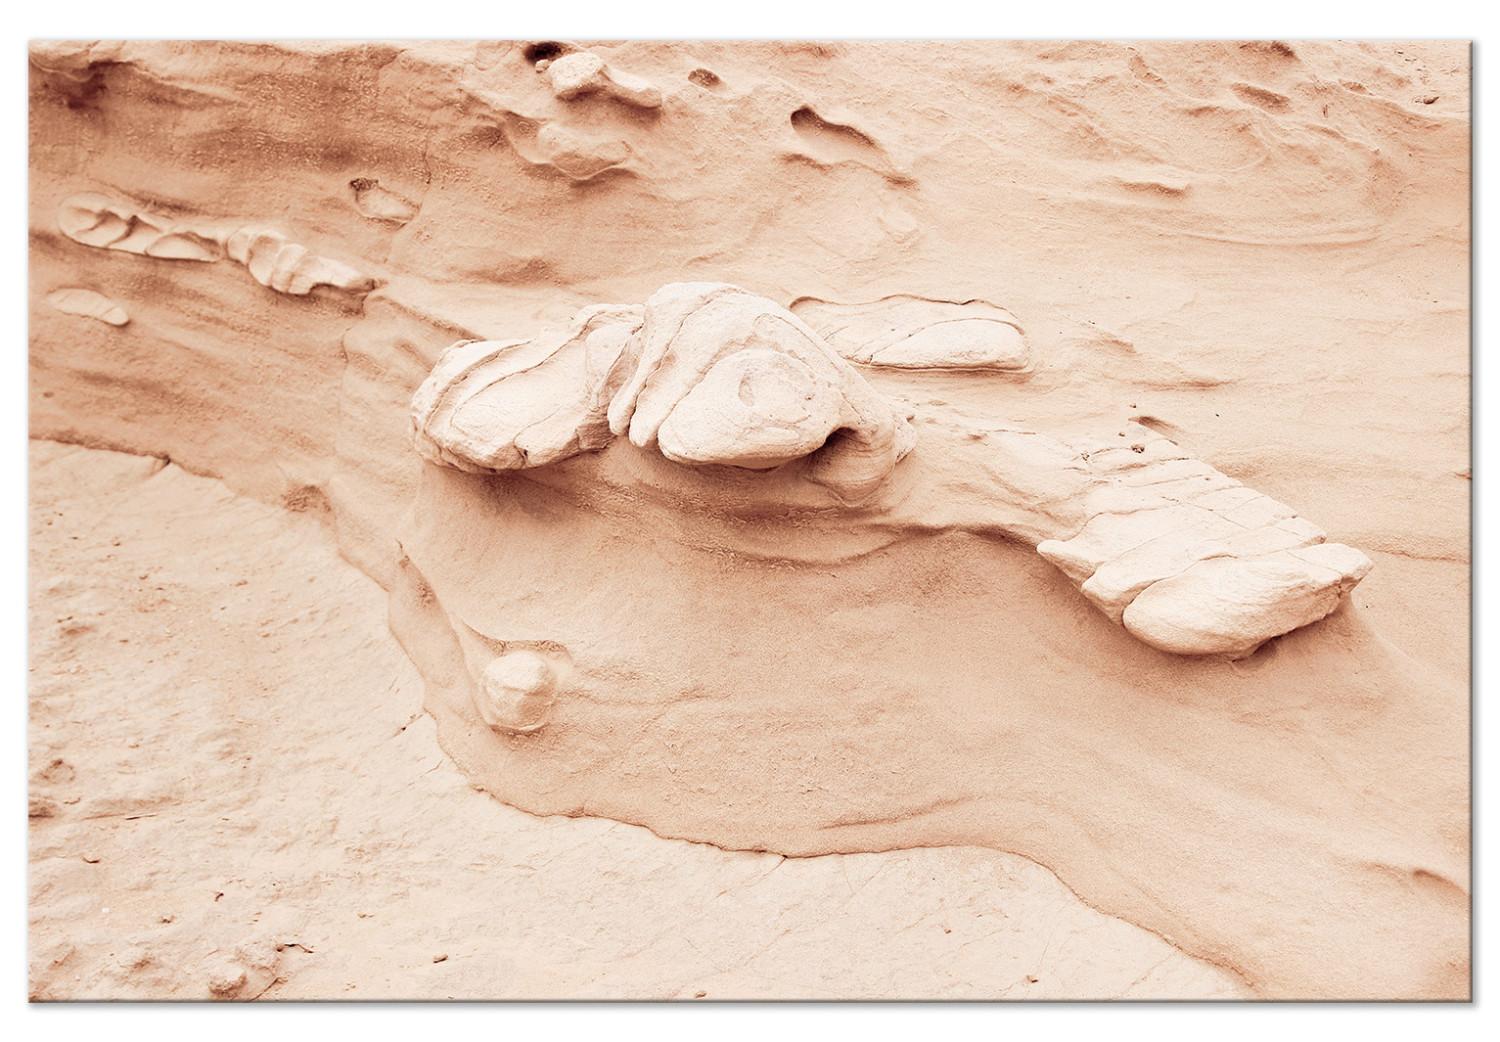 Cuadro decorativo Textura rocosa (1 parte) - paisaje natural con arena y piedras